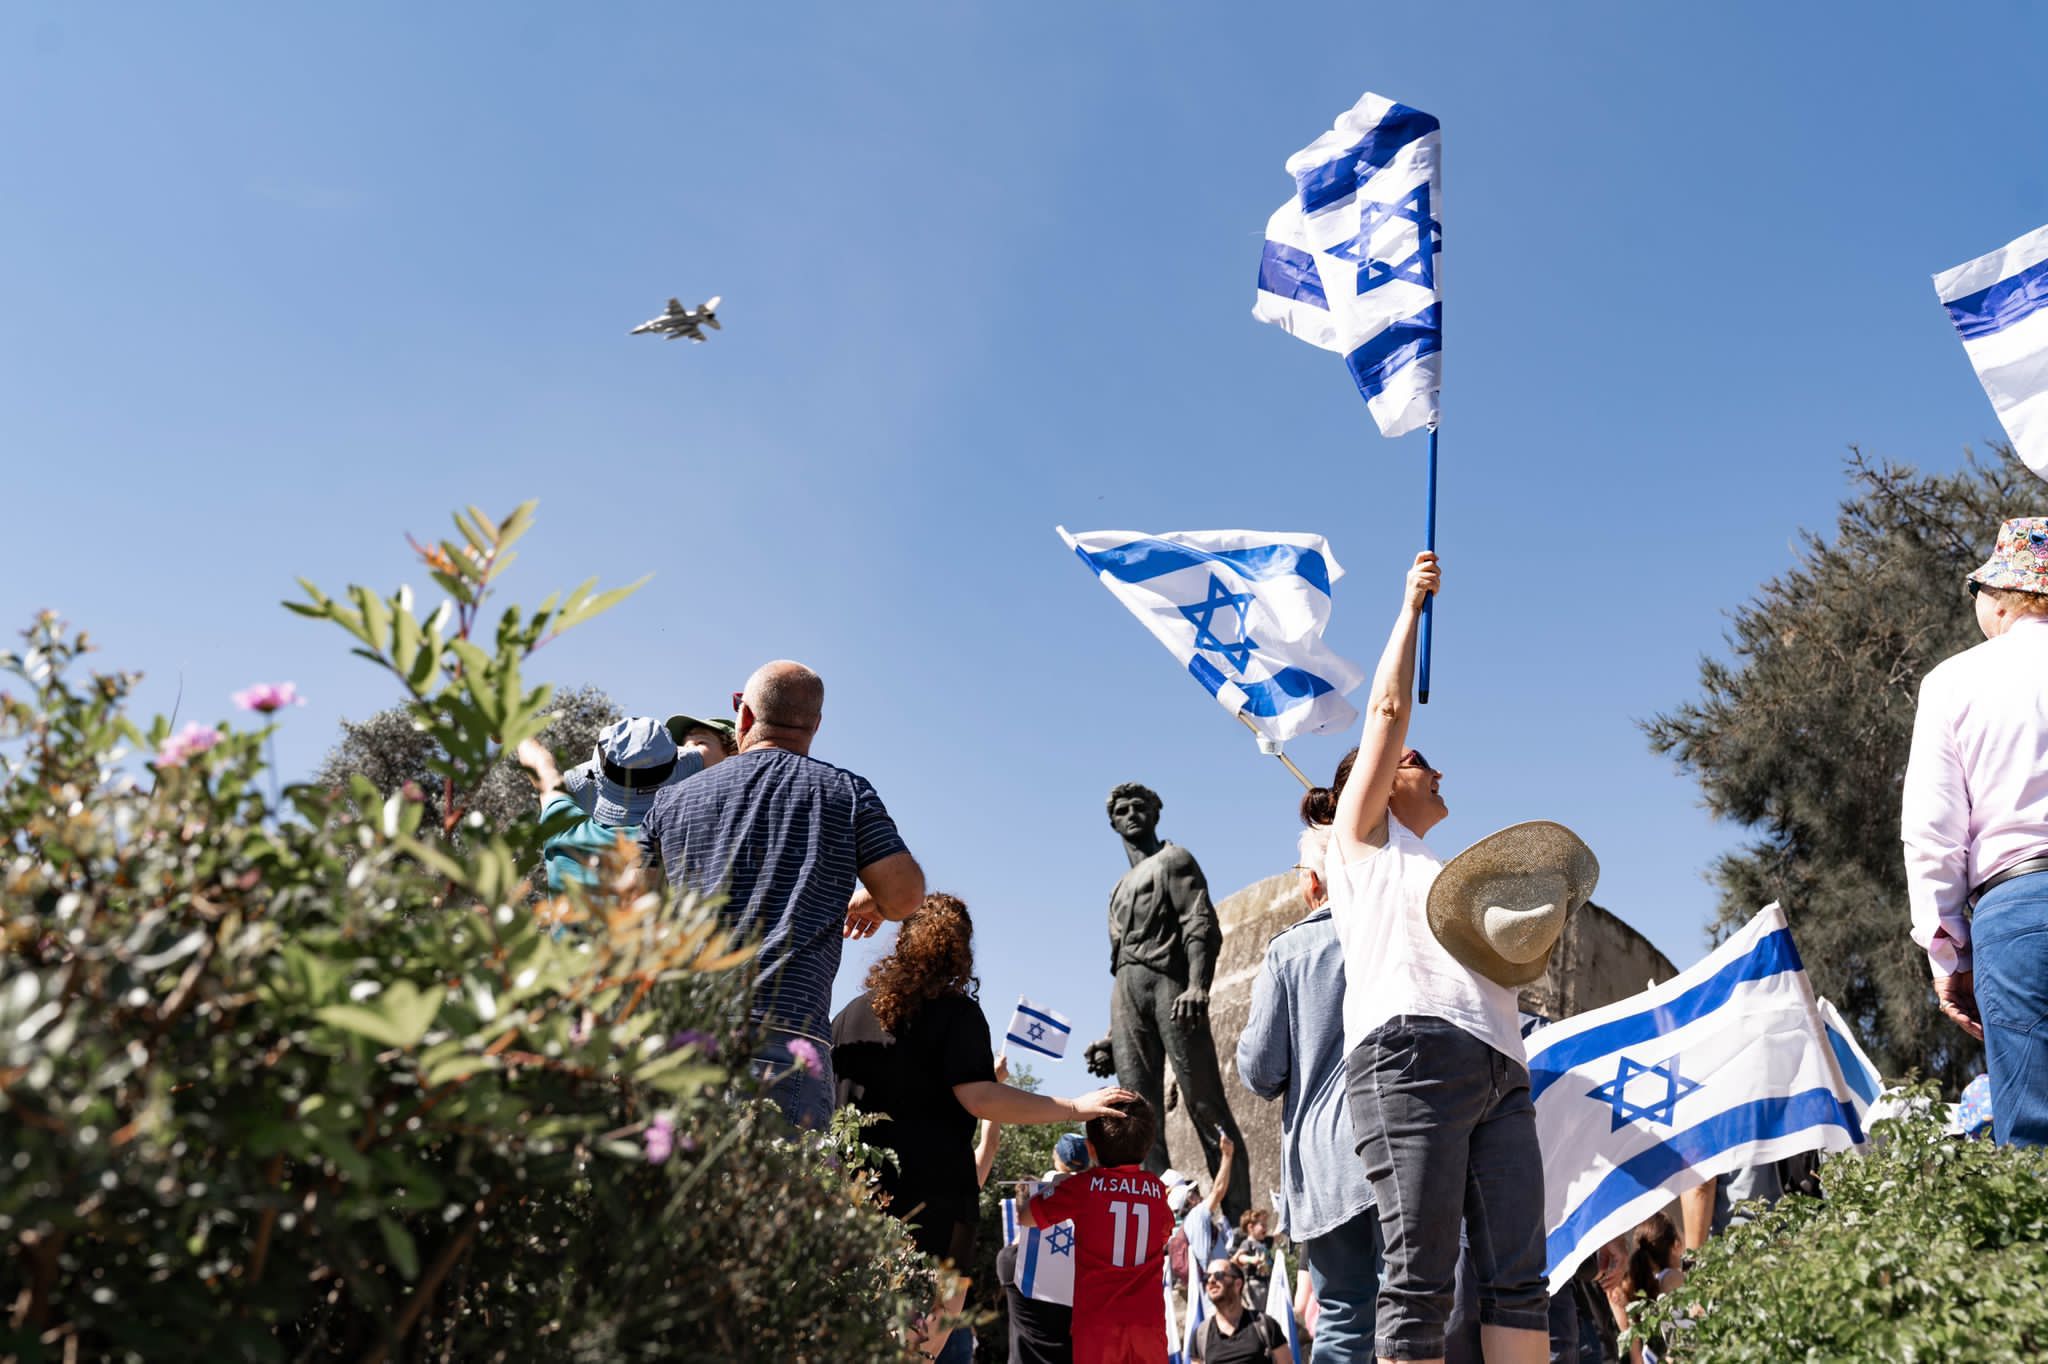 Entre desafios e esperança: Israel observa dias da Lembrança e da Independência